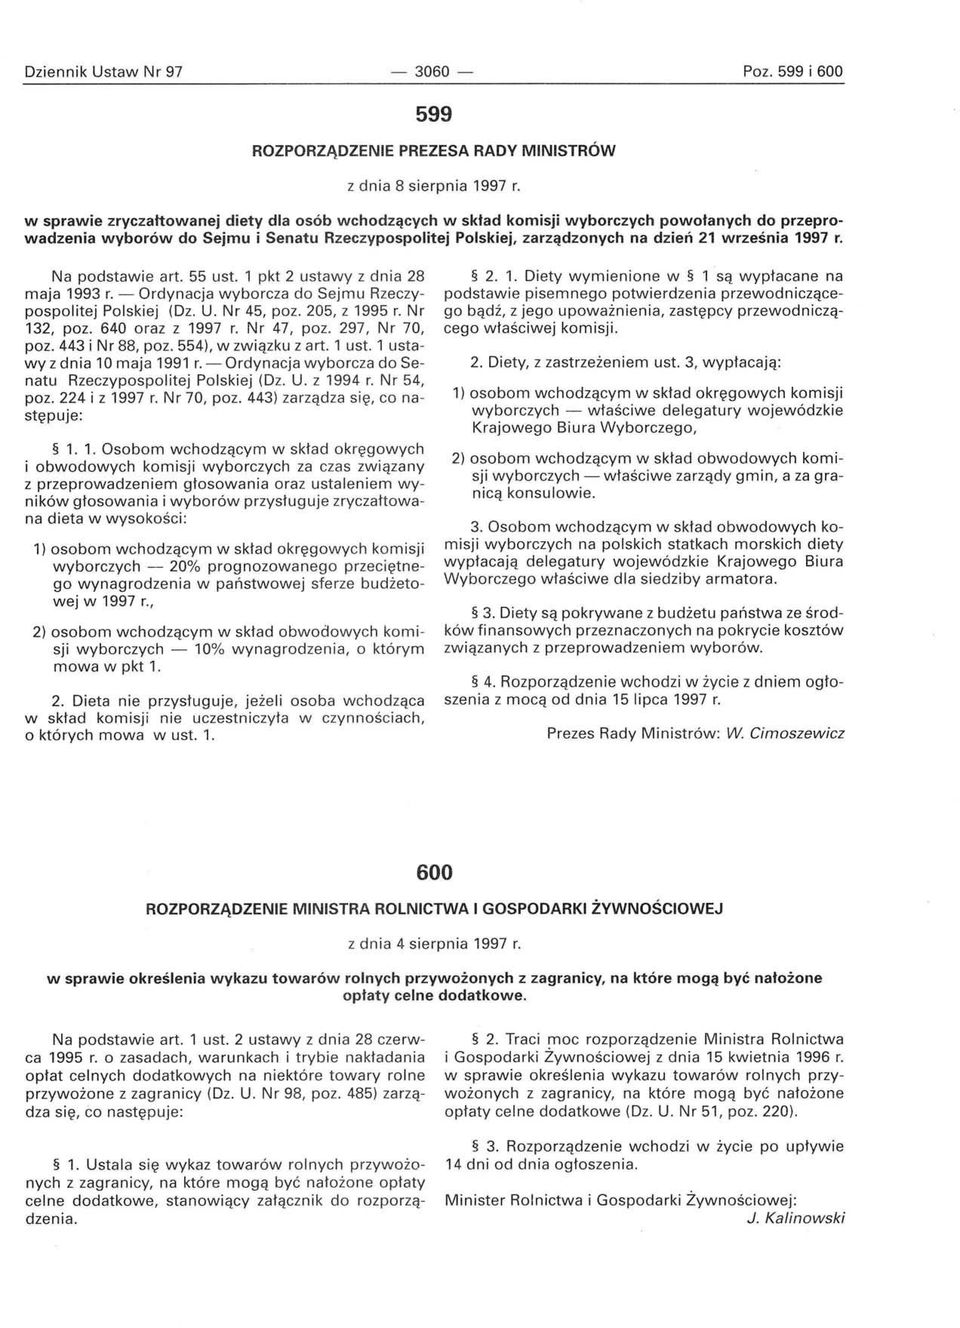 1997 r. Na podstawie art. 55 ust. 1 pkt 2 ustawy z dnia 28 maja 1993 r. - Ordynacja wyborcza do Sejmu Rzeczypospolitej Polskiej (Oz. U. Nr 45, poz. 205, z 1995 r. Nr 132, poz. 640 oraz z 1997 r.